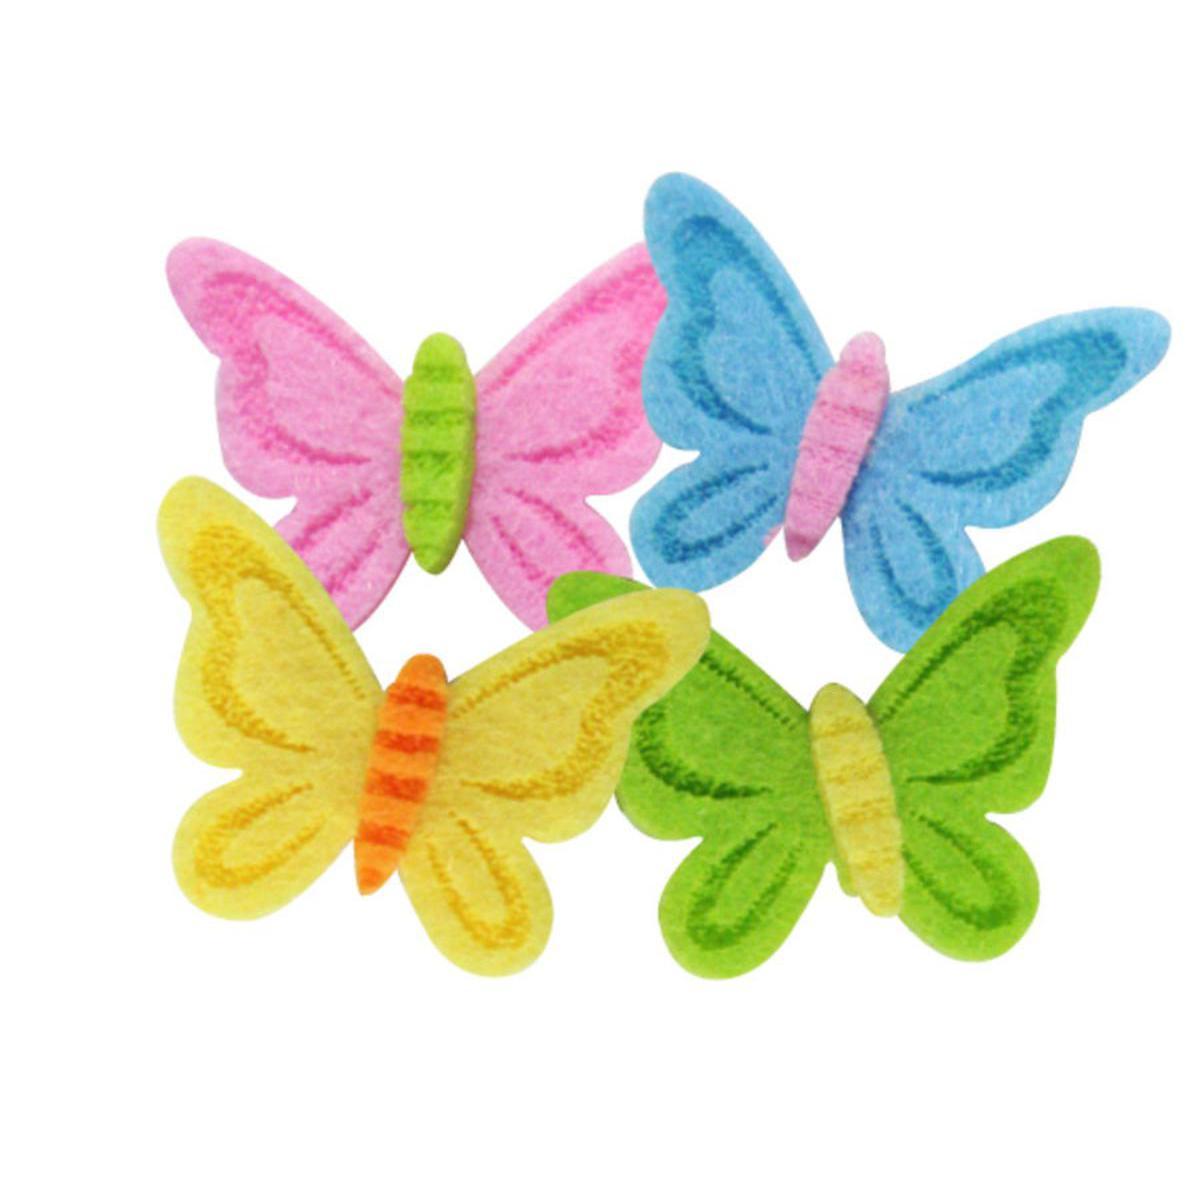 Lot de 8 papillons autocollants - Feutrine - 3,2 x 2,5 cm - Multicolore